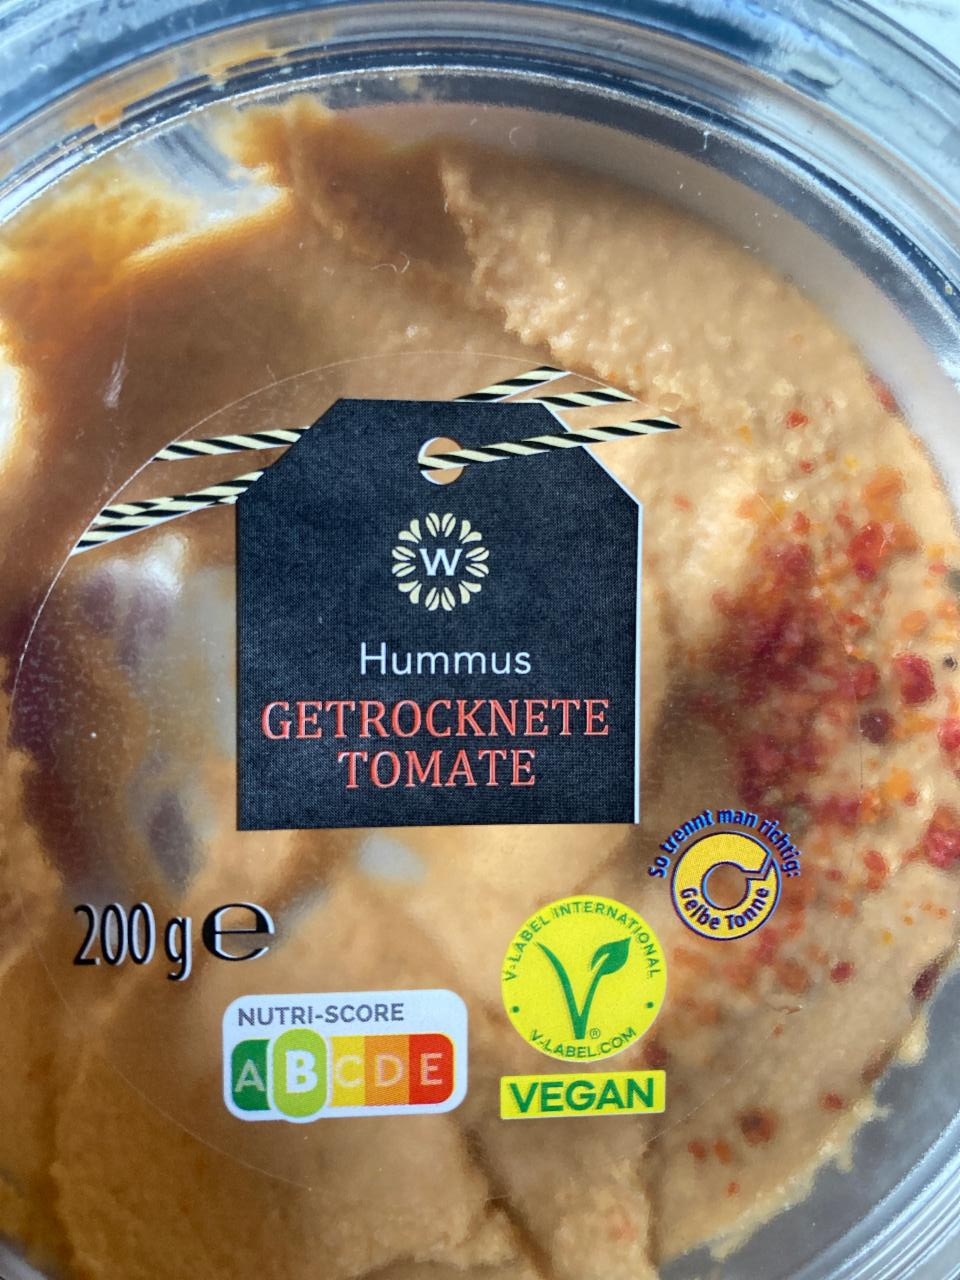 Fotografie - Hummus getrocknete tomate Wonnemeyer